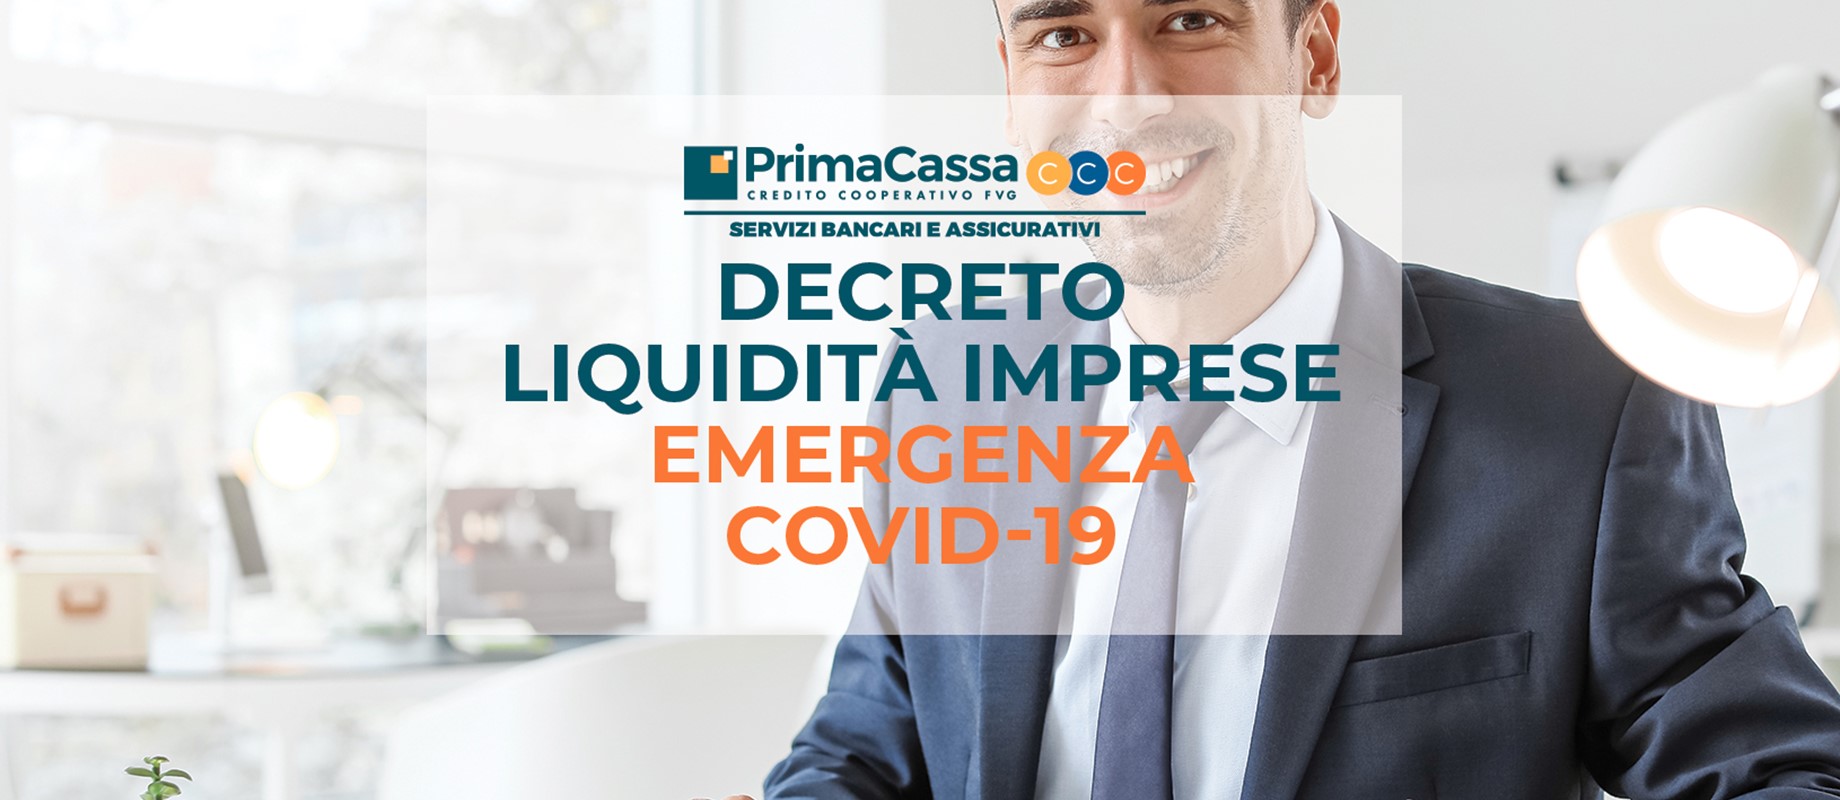 EMERGENZA COVID-19 Decreto Liquidità imprese 